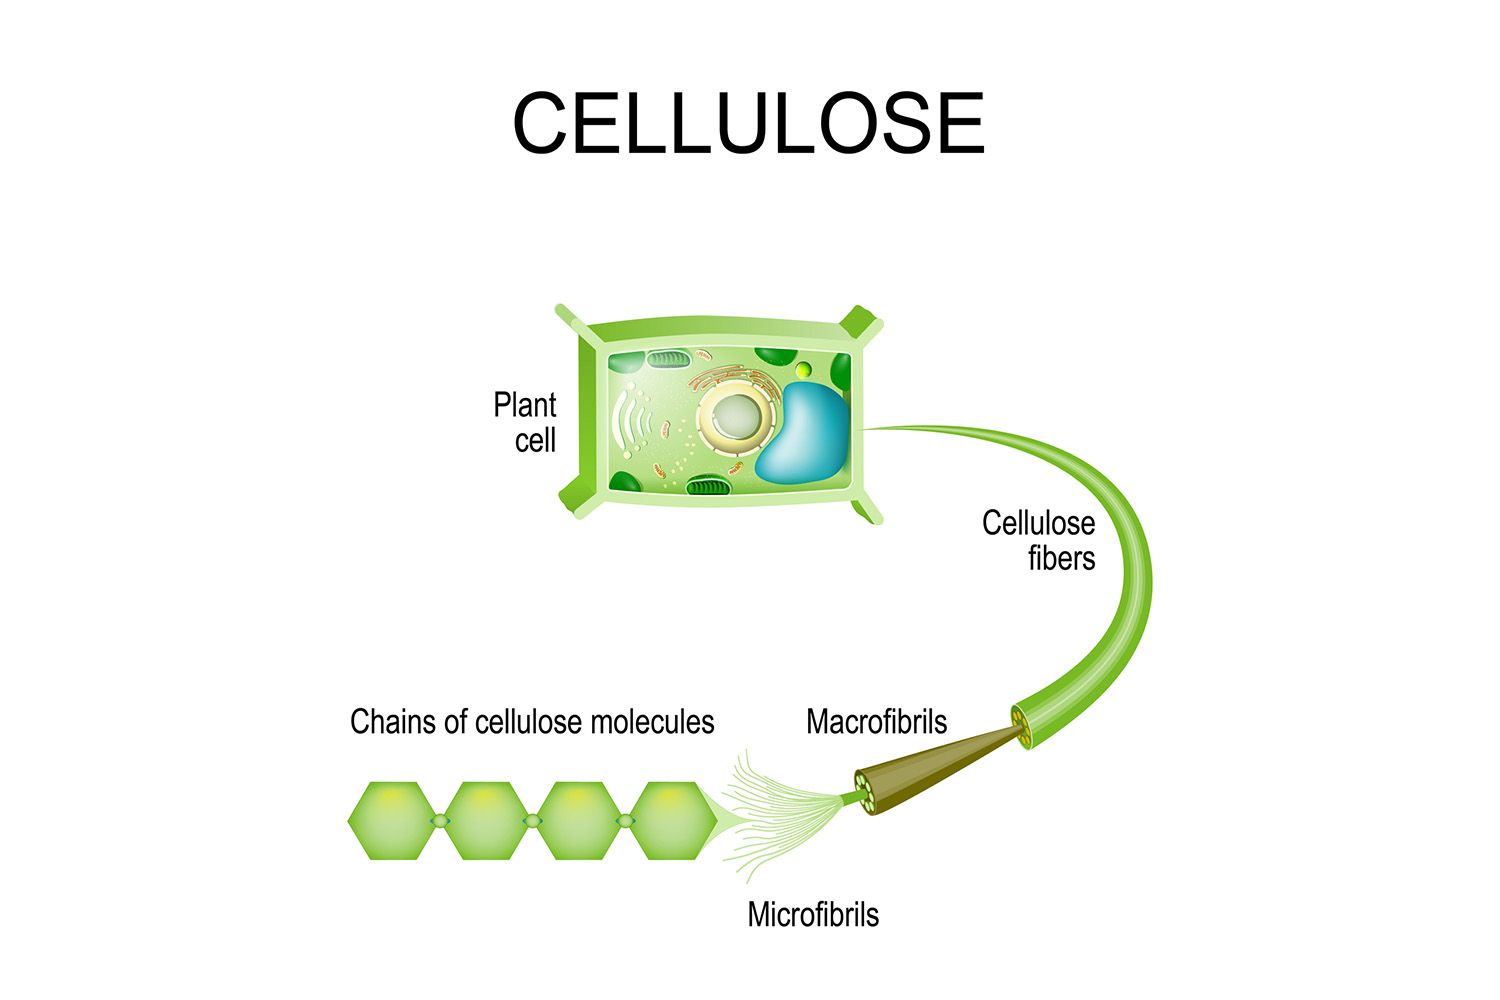 سلولز چیست و از خواص و کاربردهای آن چه می دانید؟